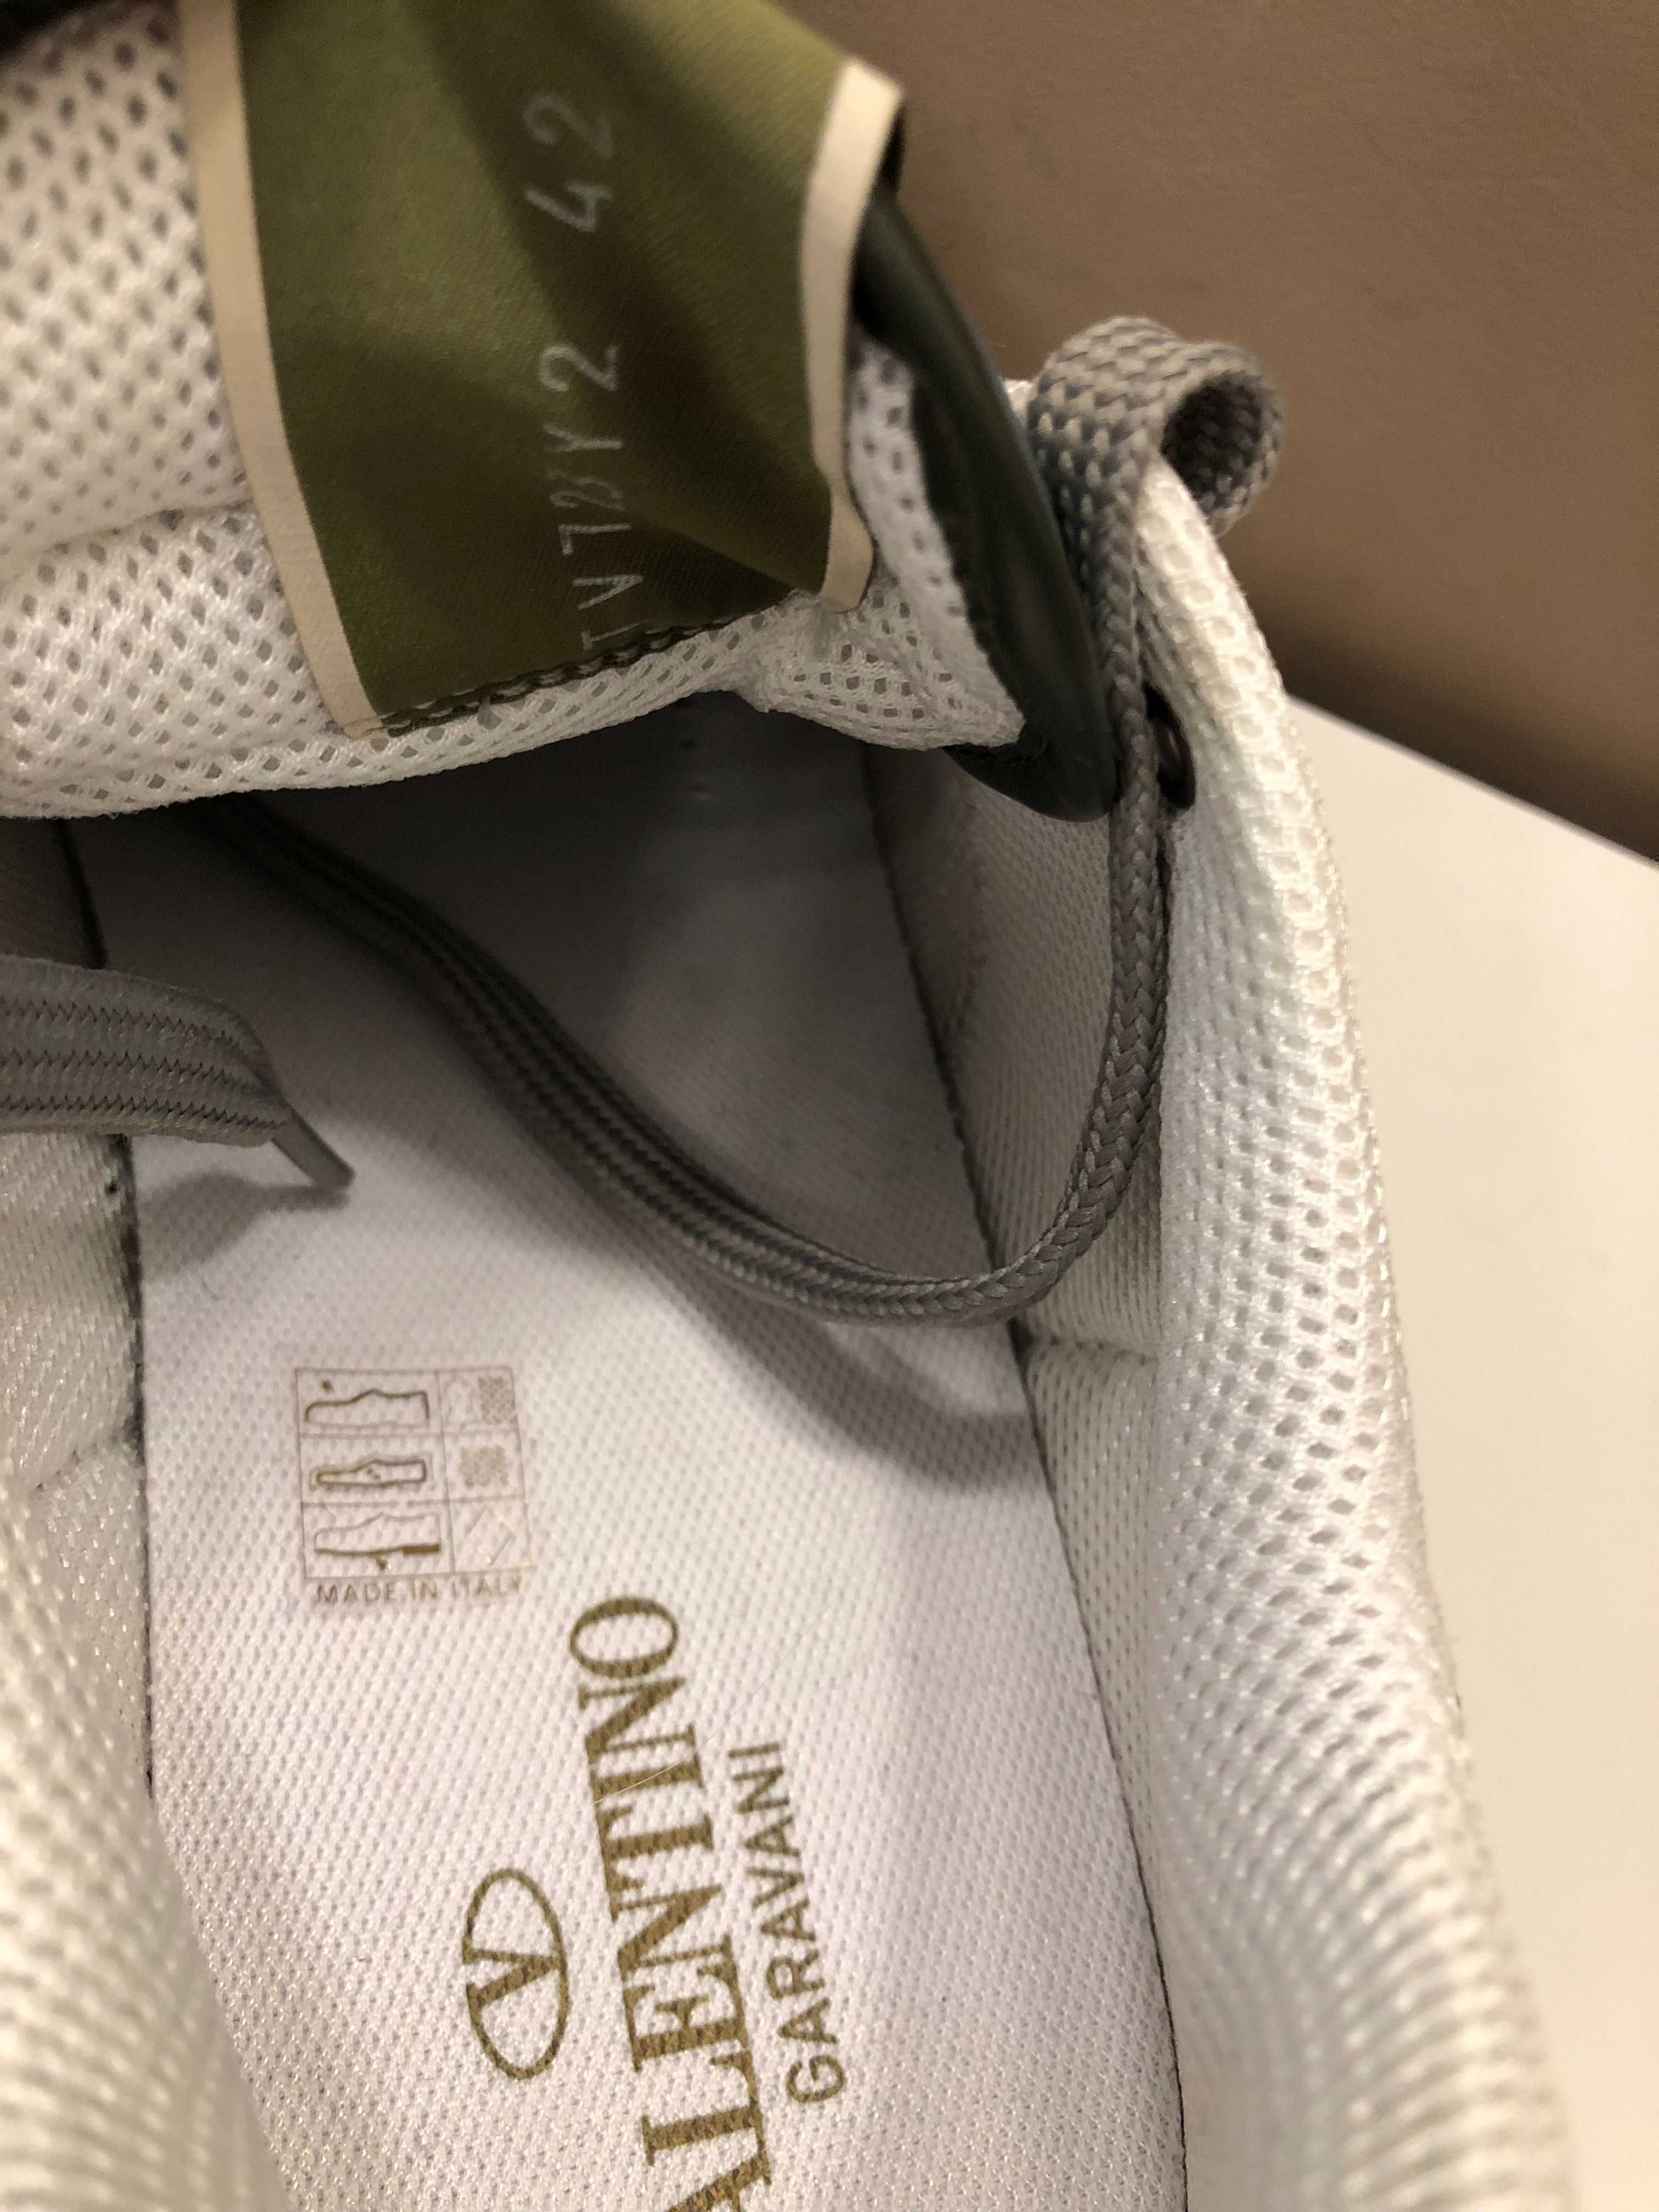 Valentino Garavani sneakers 44 autentici, full box, retail 580 euro